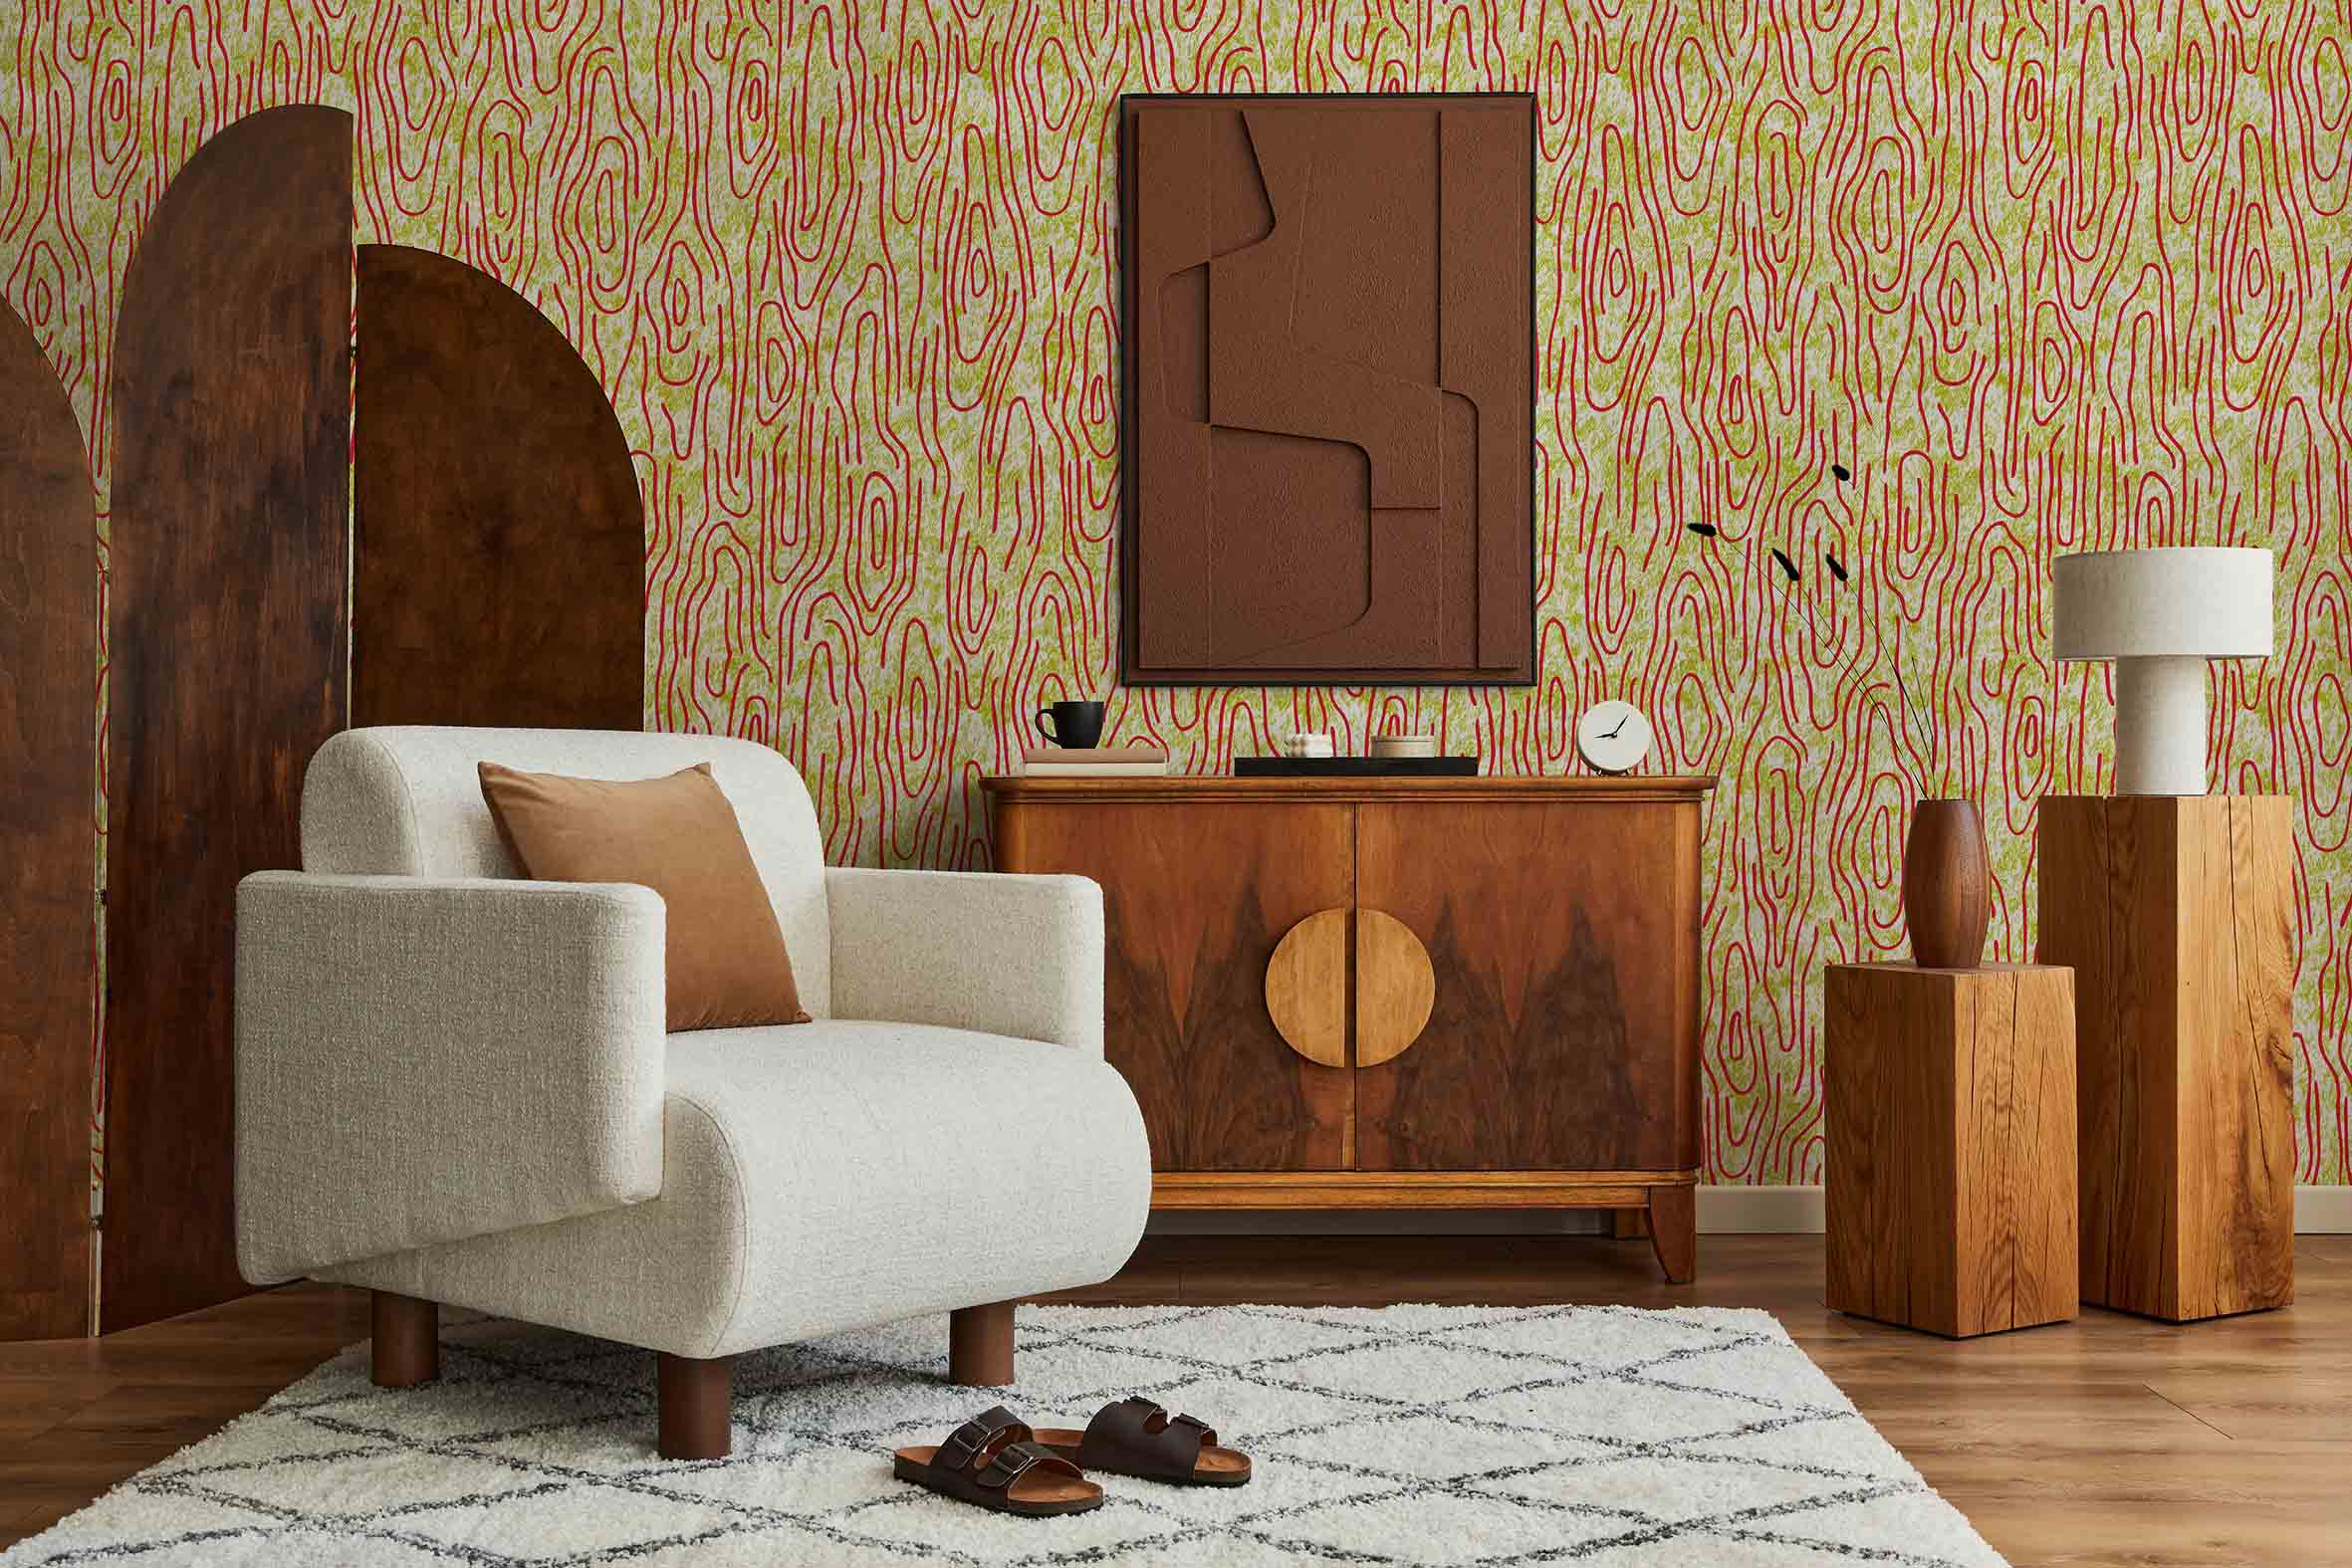 MaVoix-wallpaper-Vampa-incendio-by-Studio-Lievito-pattern-Collezione-Essenziali-living-room